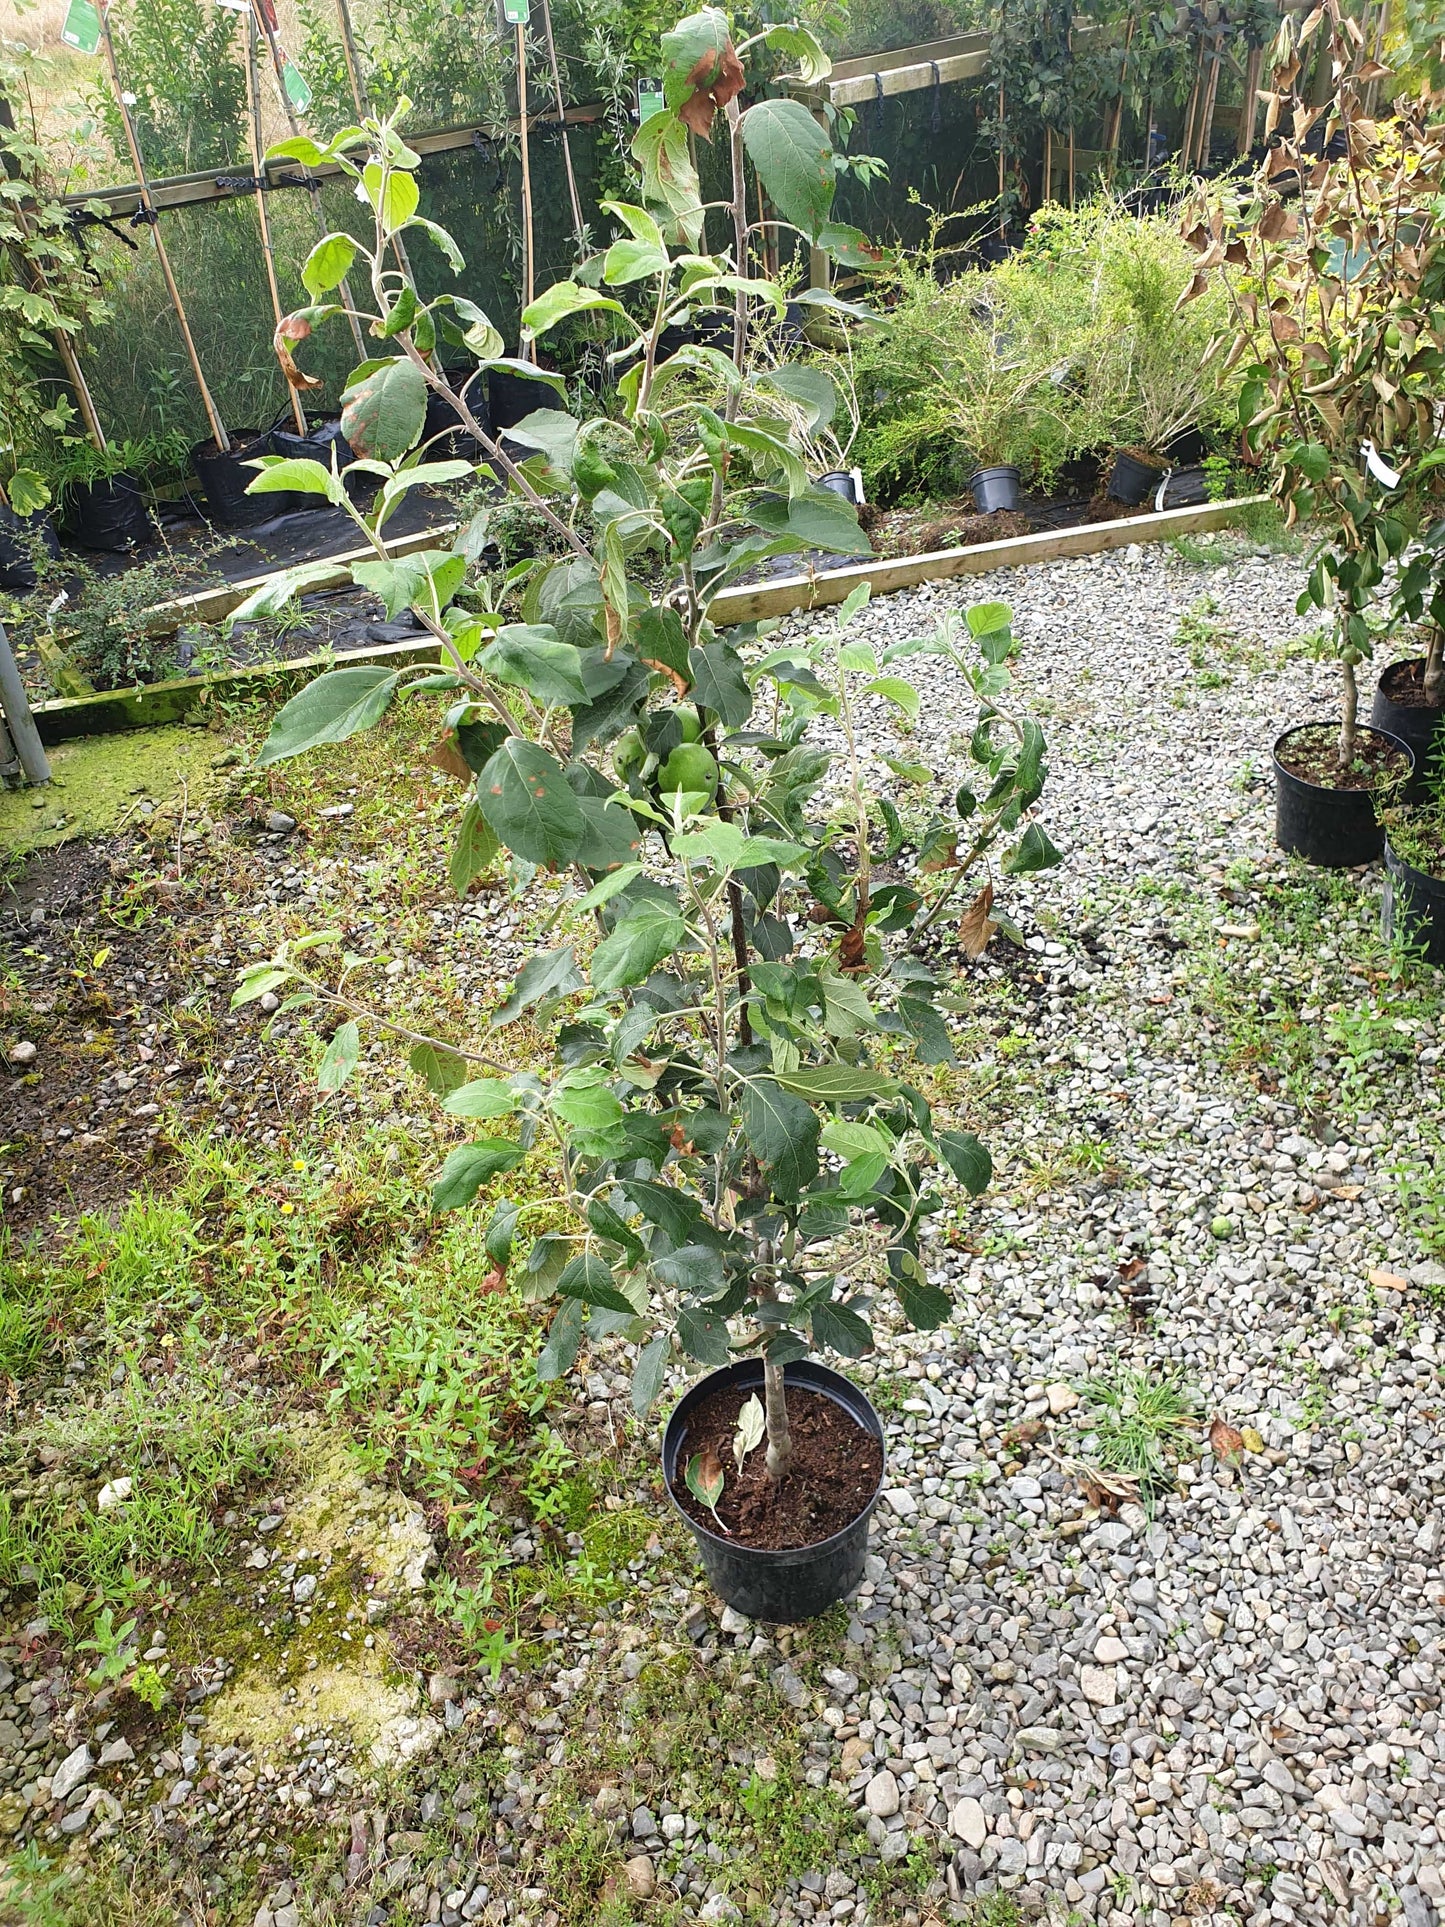 Trees - Apple Cox's Orange Pippin (Malus Domestica)